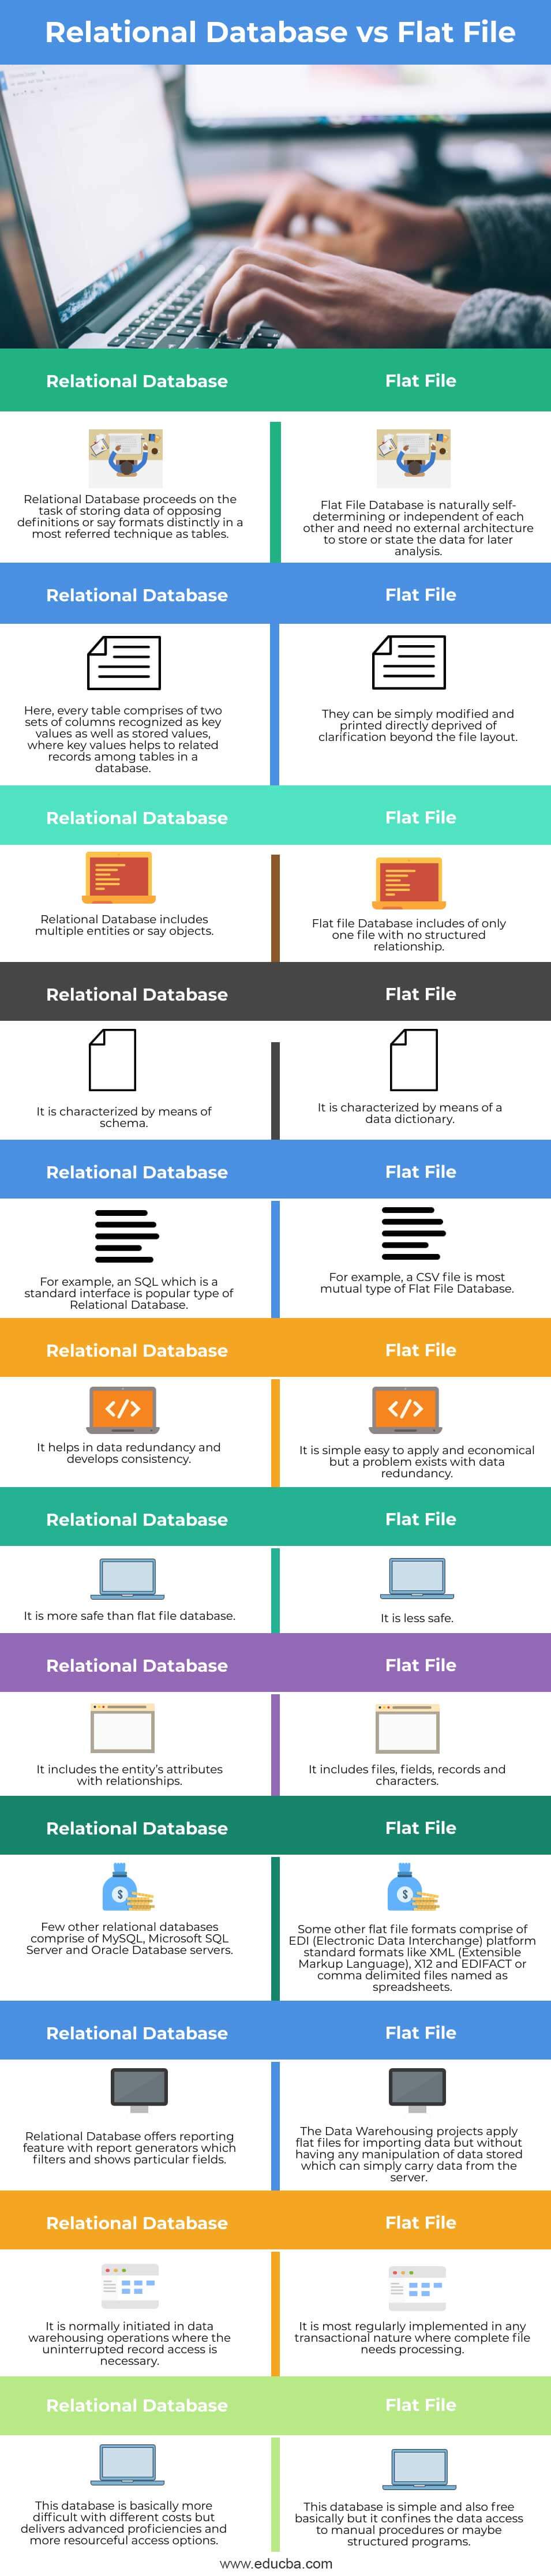 Relational-Database-vs-Flat-File-info